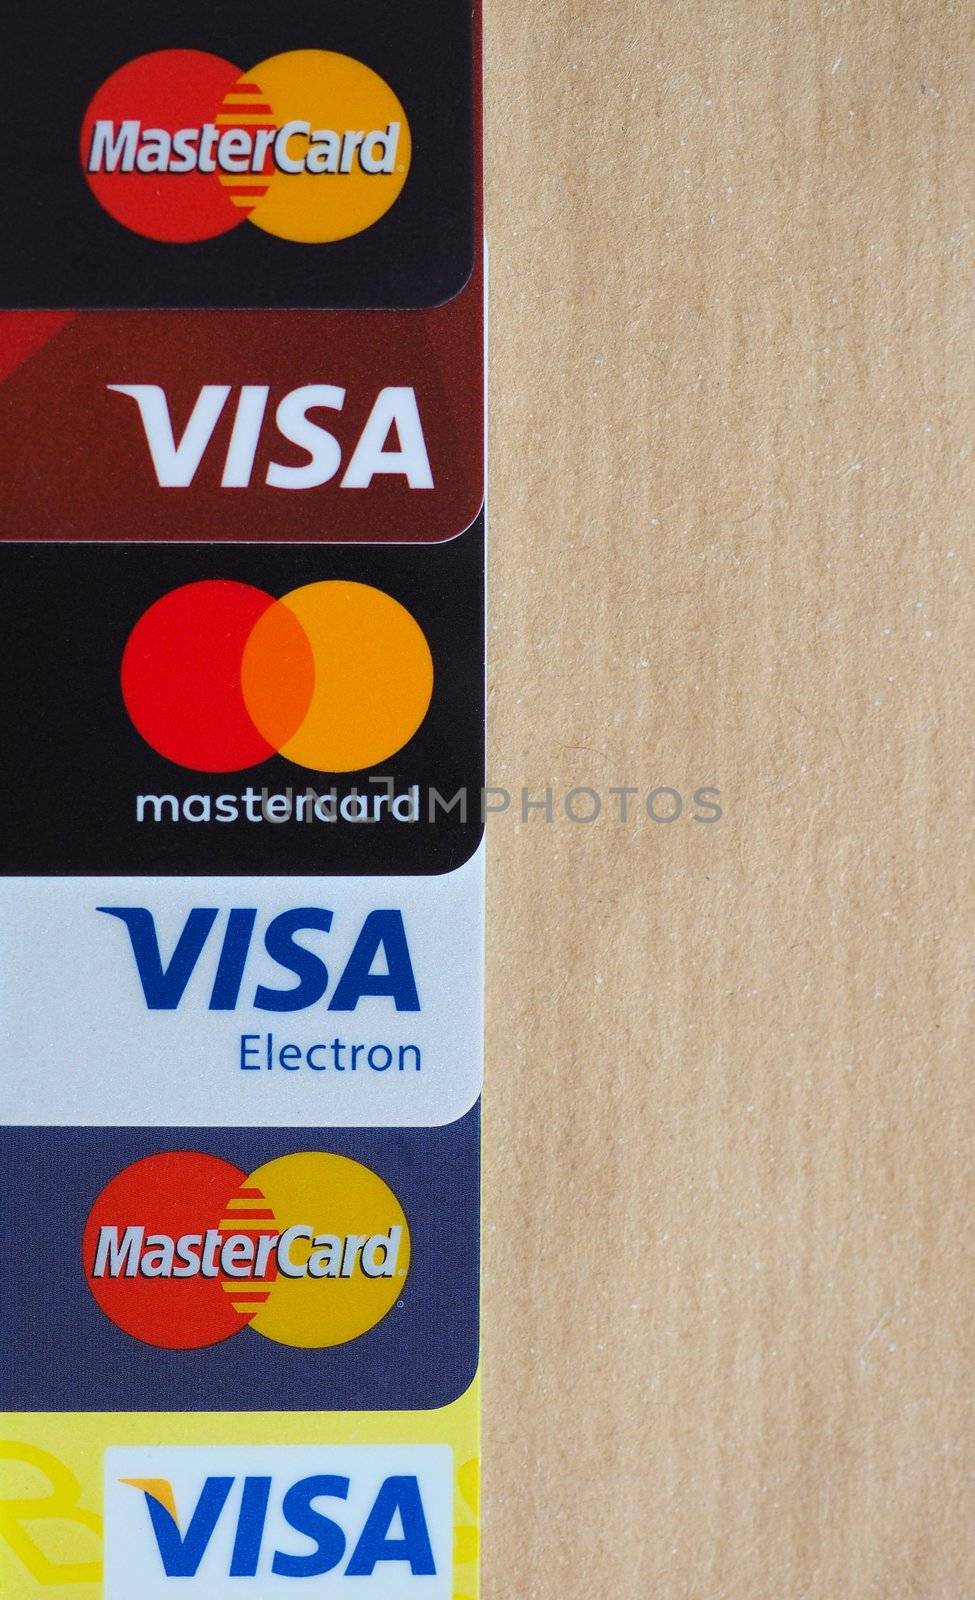 LONDON, UK - CIRCA FEBRUARY 2018: Many Visa and MasterCard credit cards